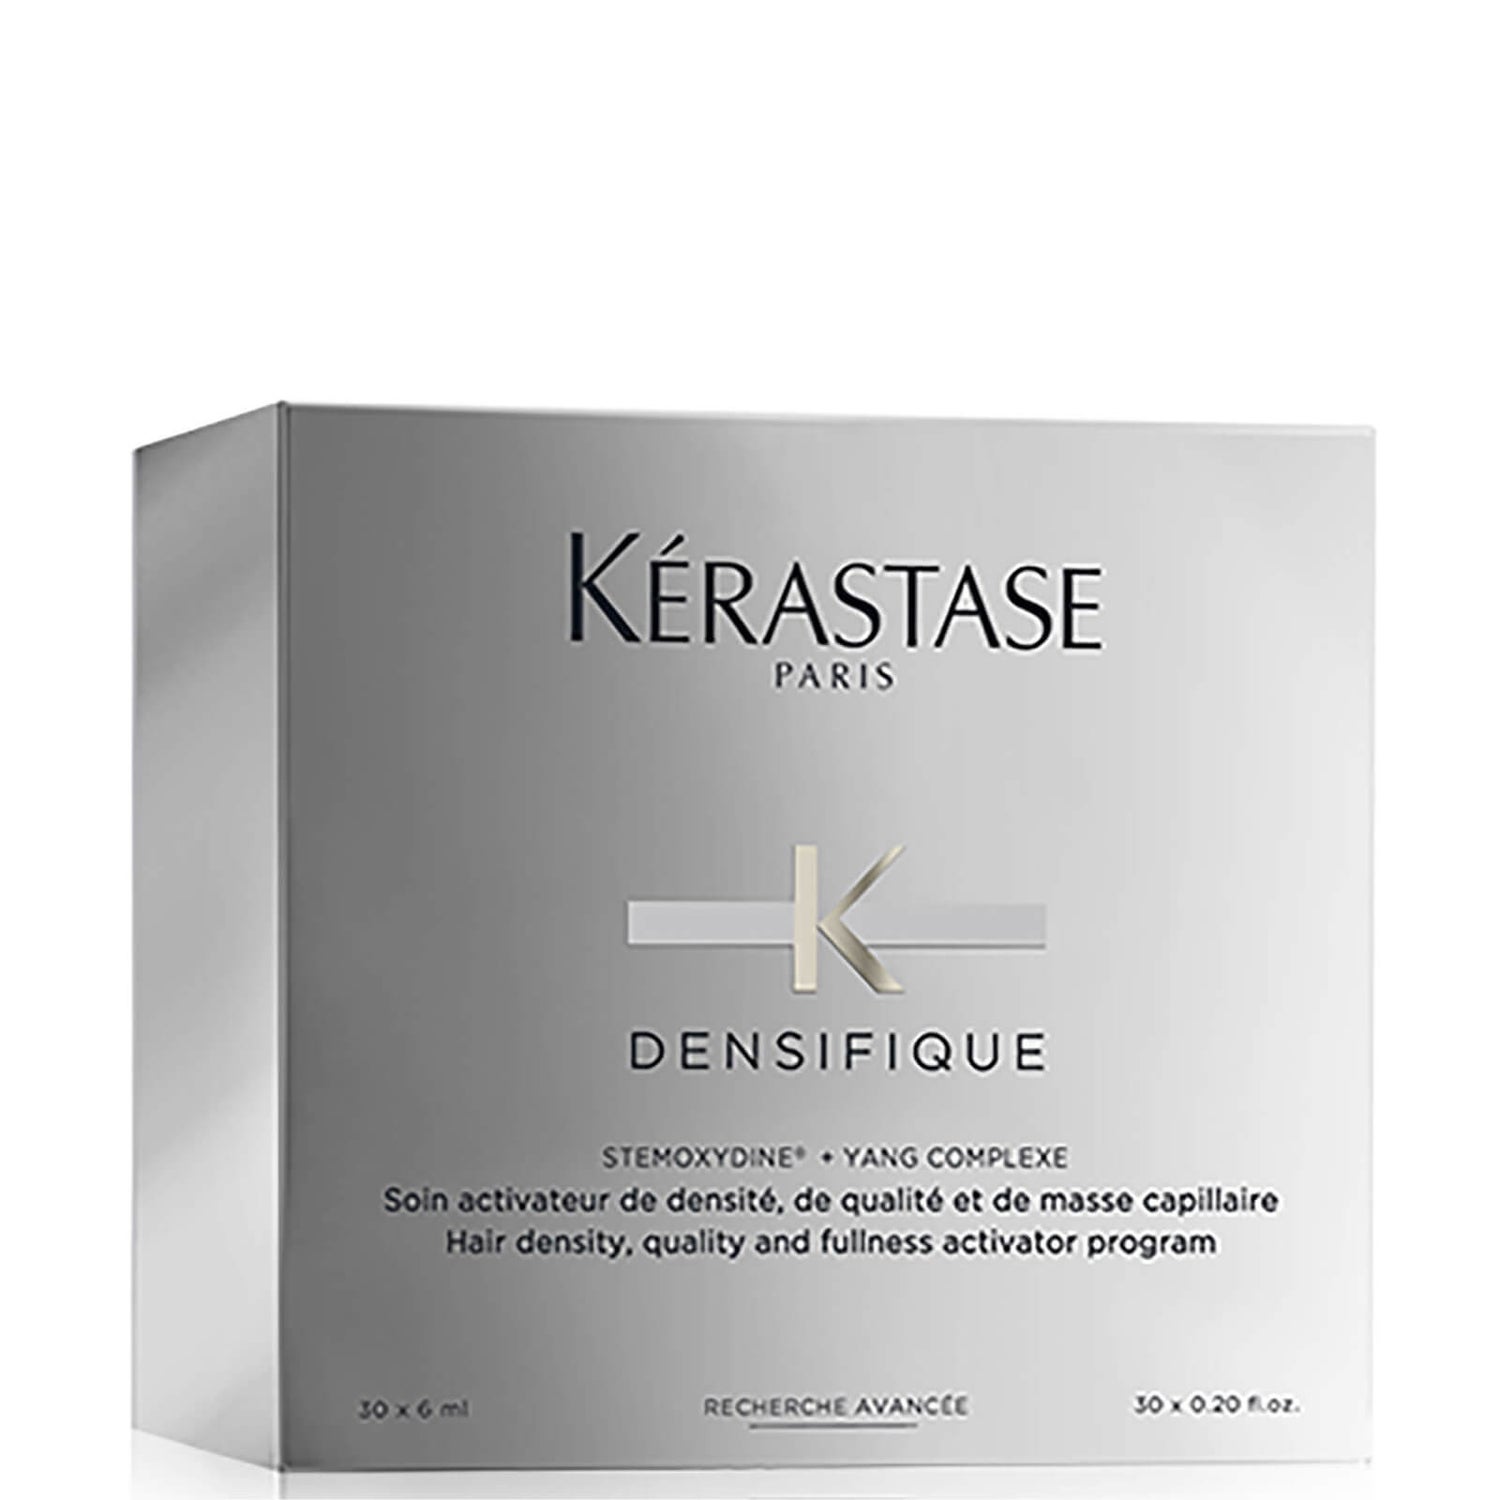 Kérastase Densifique Femme -hiuspohjaan jätettävä tehohoito naisille (30 hoitoampullia x 6ml)